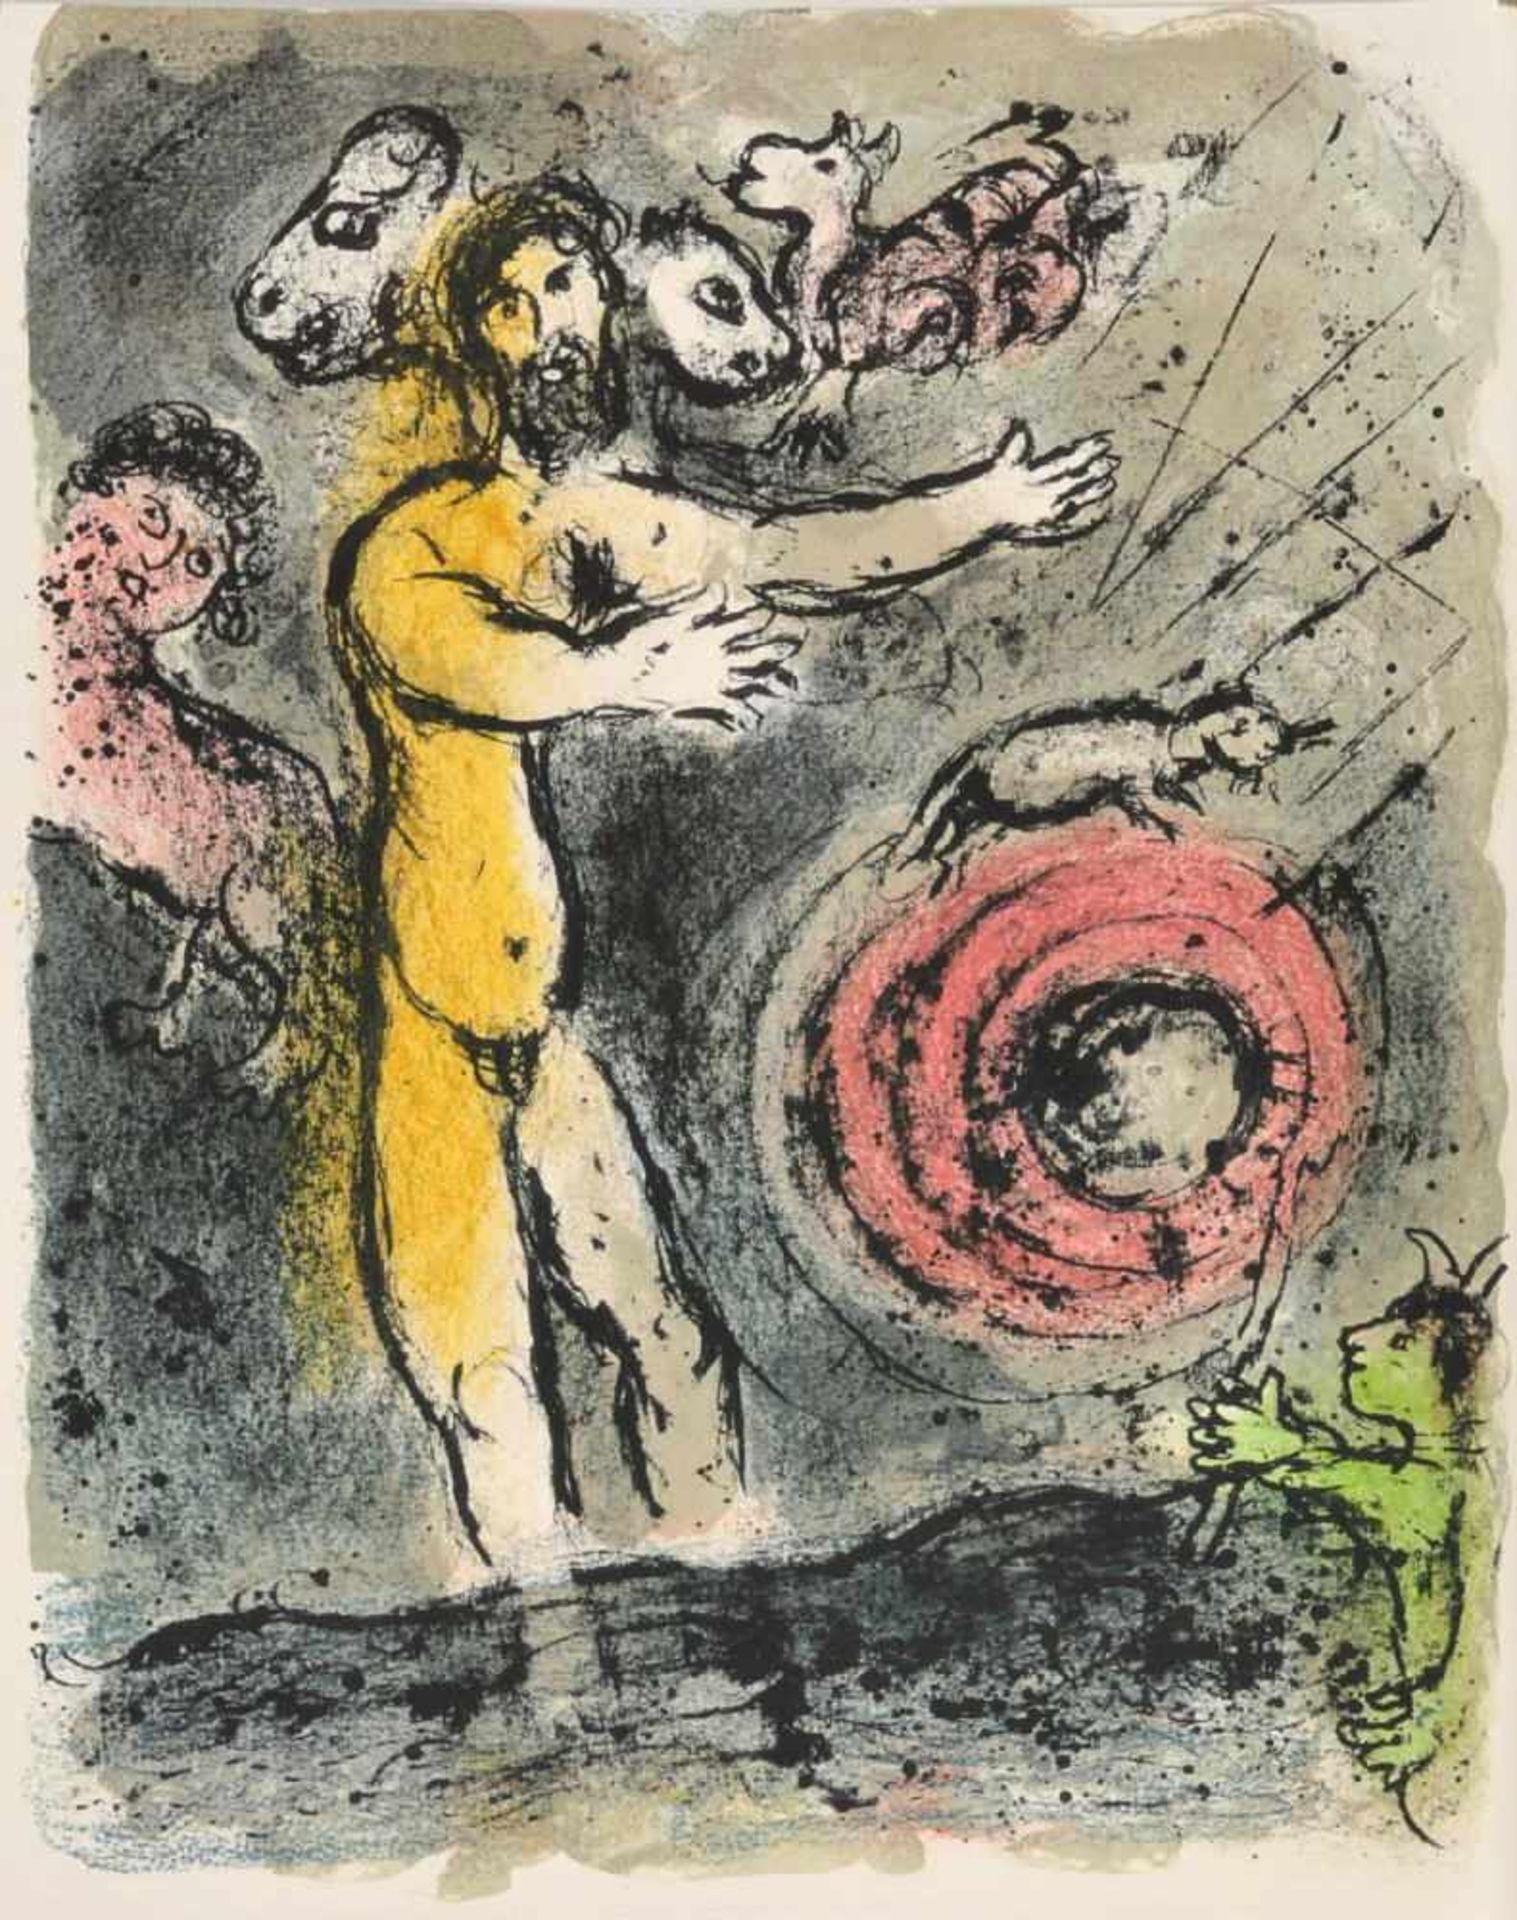 Chagall, Marc, 1887 Vitebsk - 1985 Saint-Paul-de-VenceFarblithographie, 37 x 28,5 cm, " Proteus ",